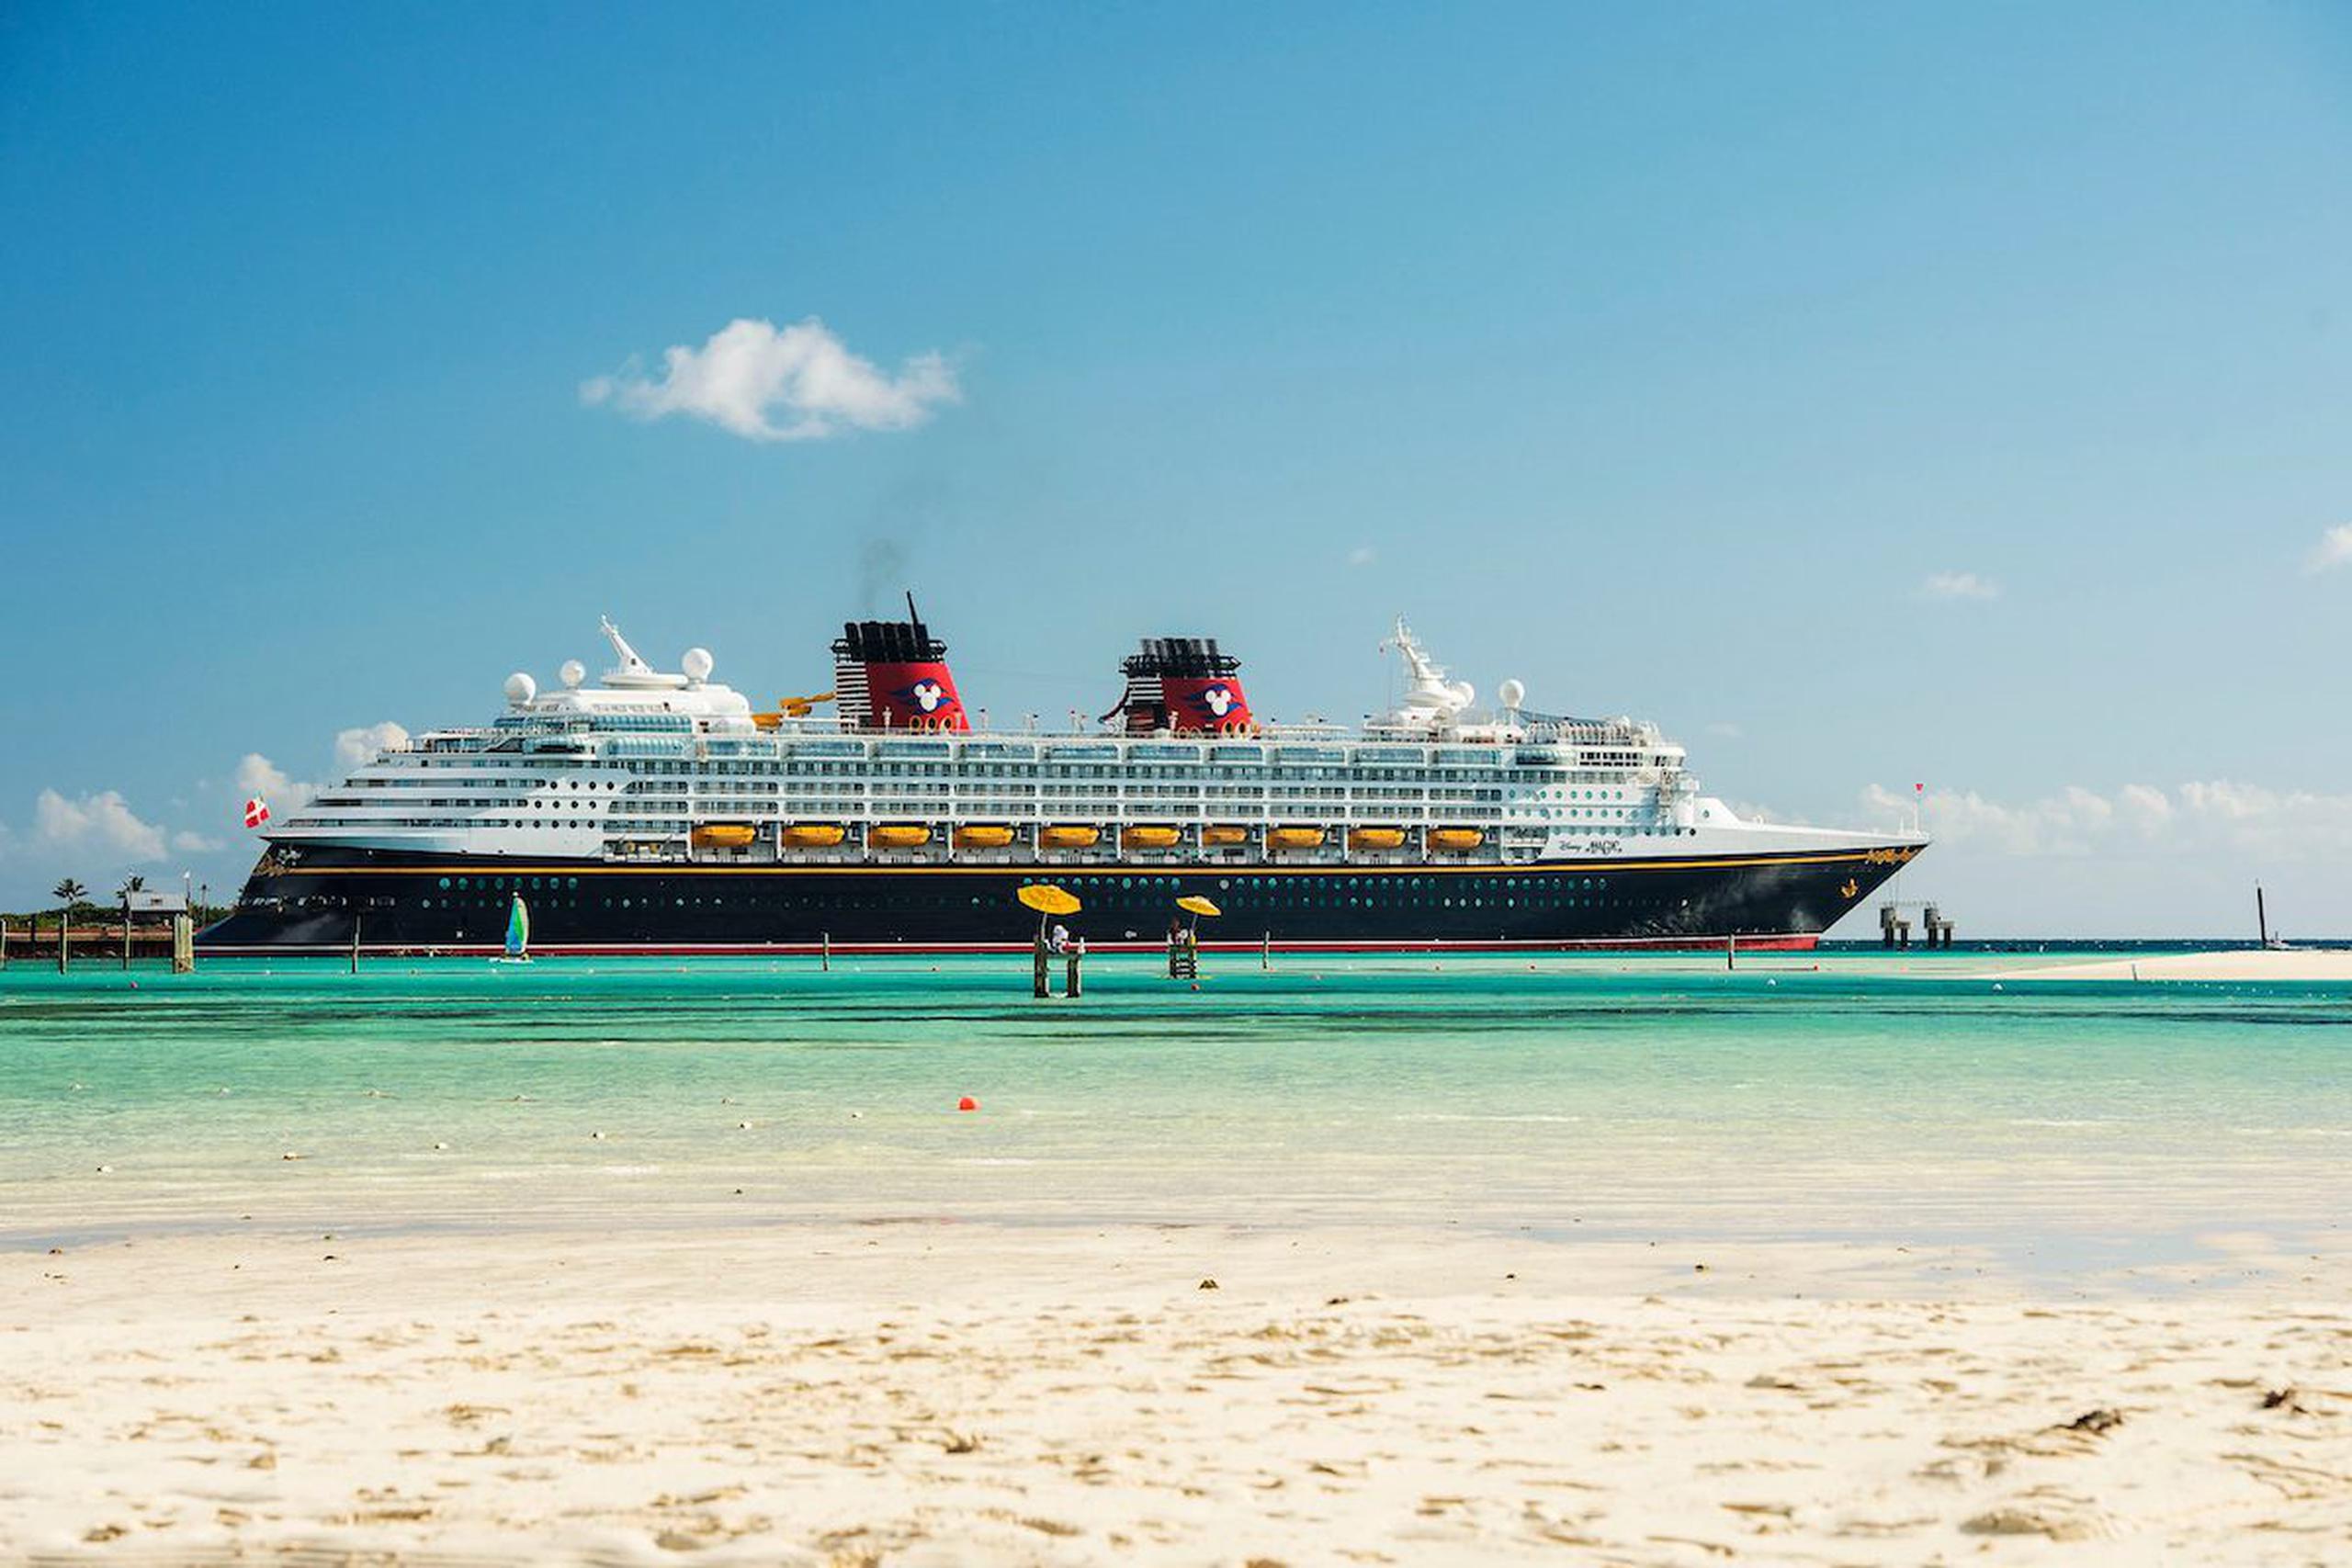 El crucero Disney Magic tiene capacidad para 2,456 pasajeros y 887 tripulantes.